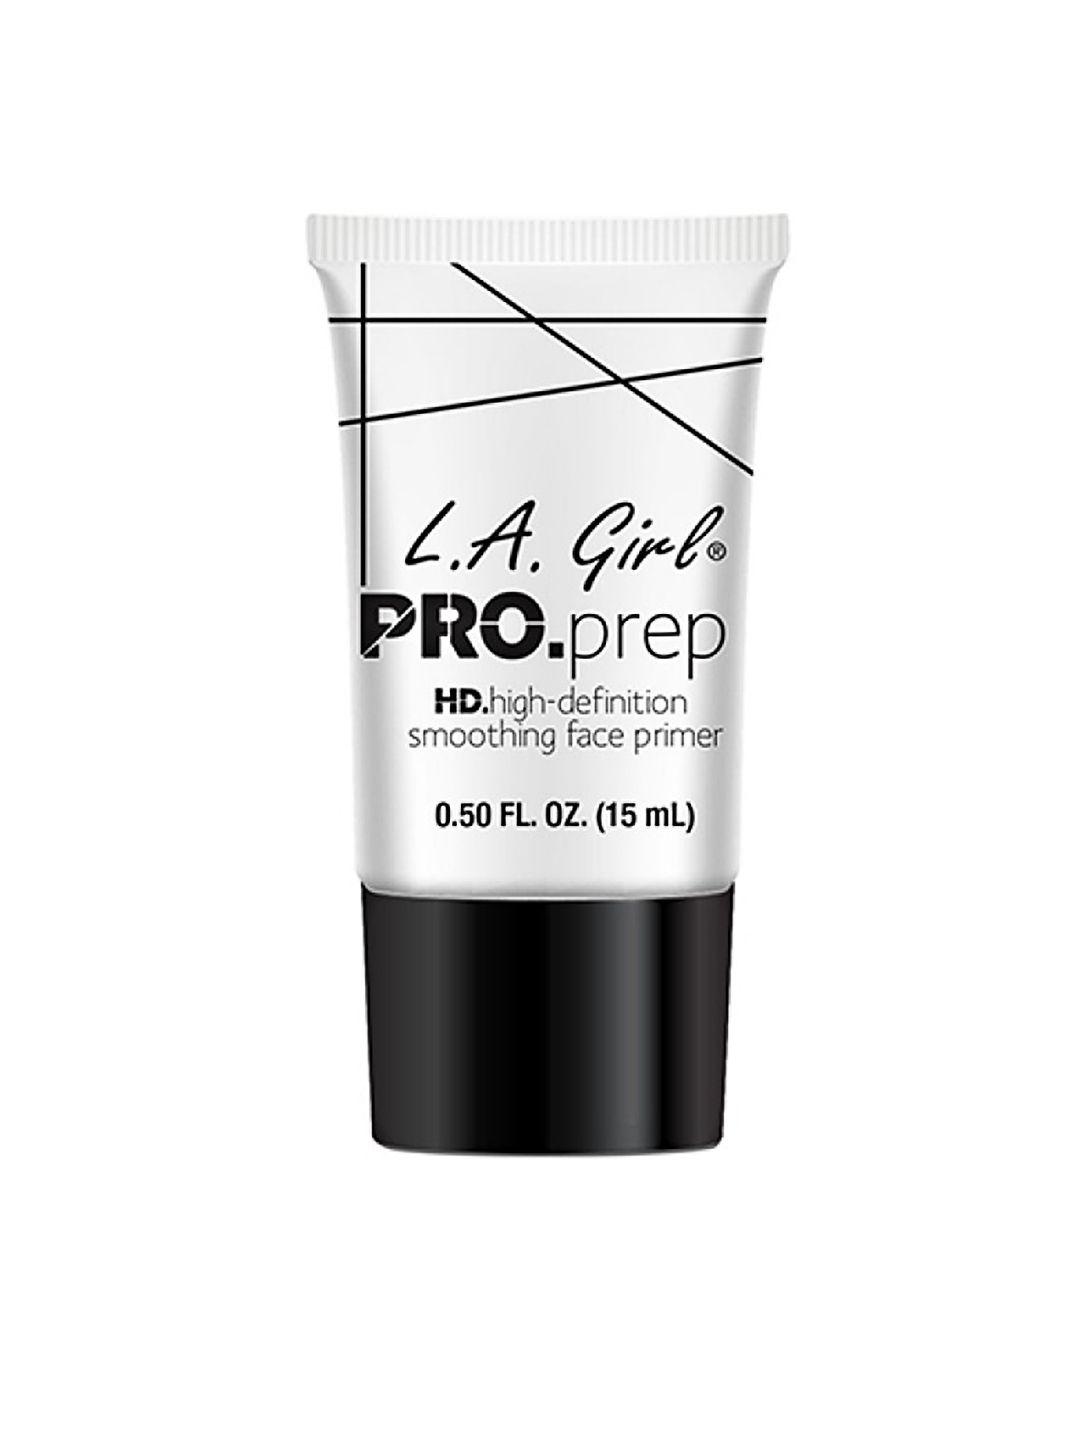 l.a girl pro.prep hd face primer